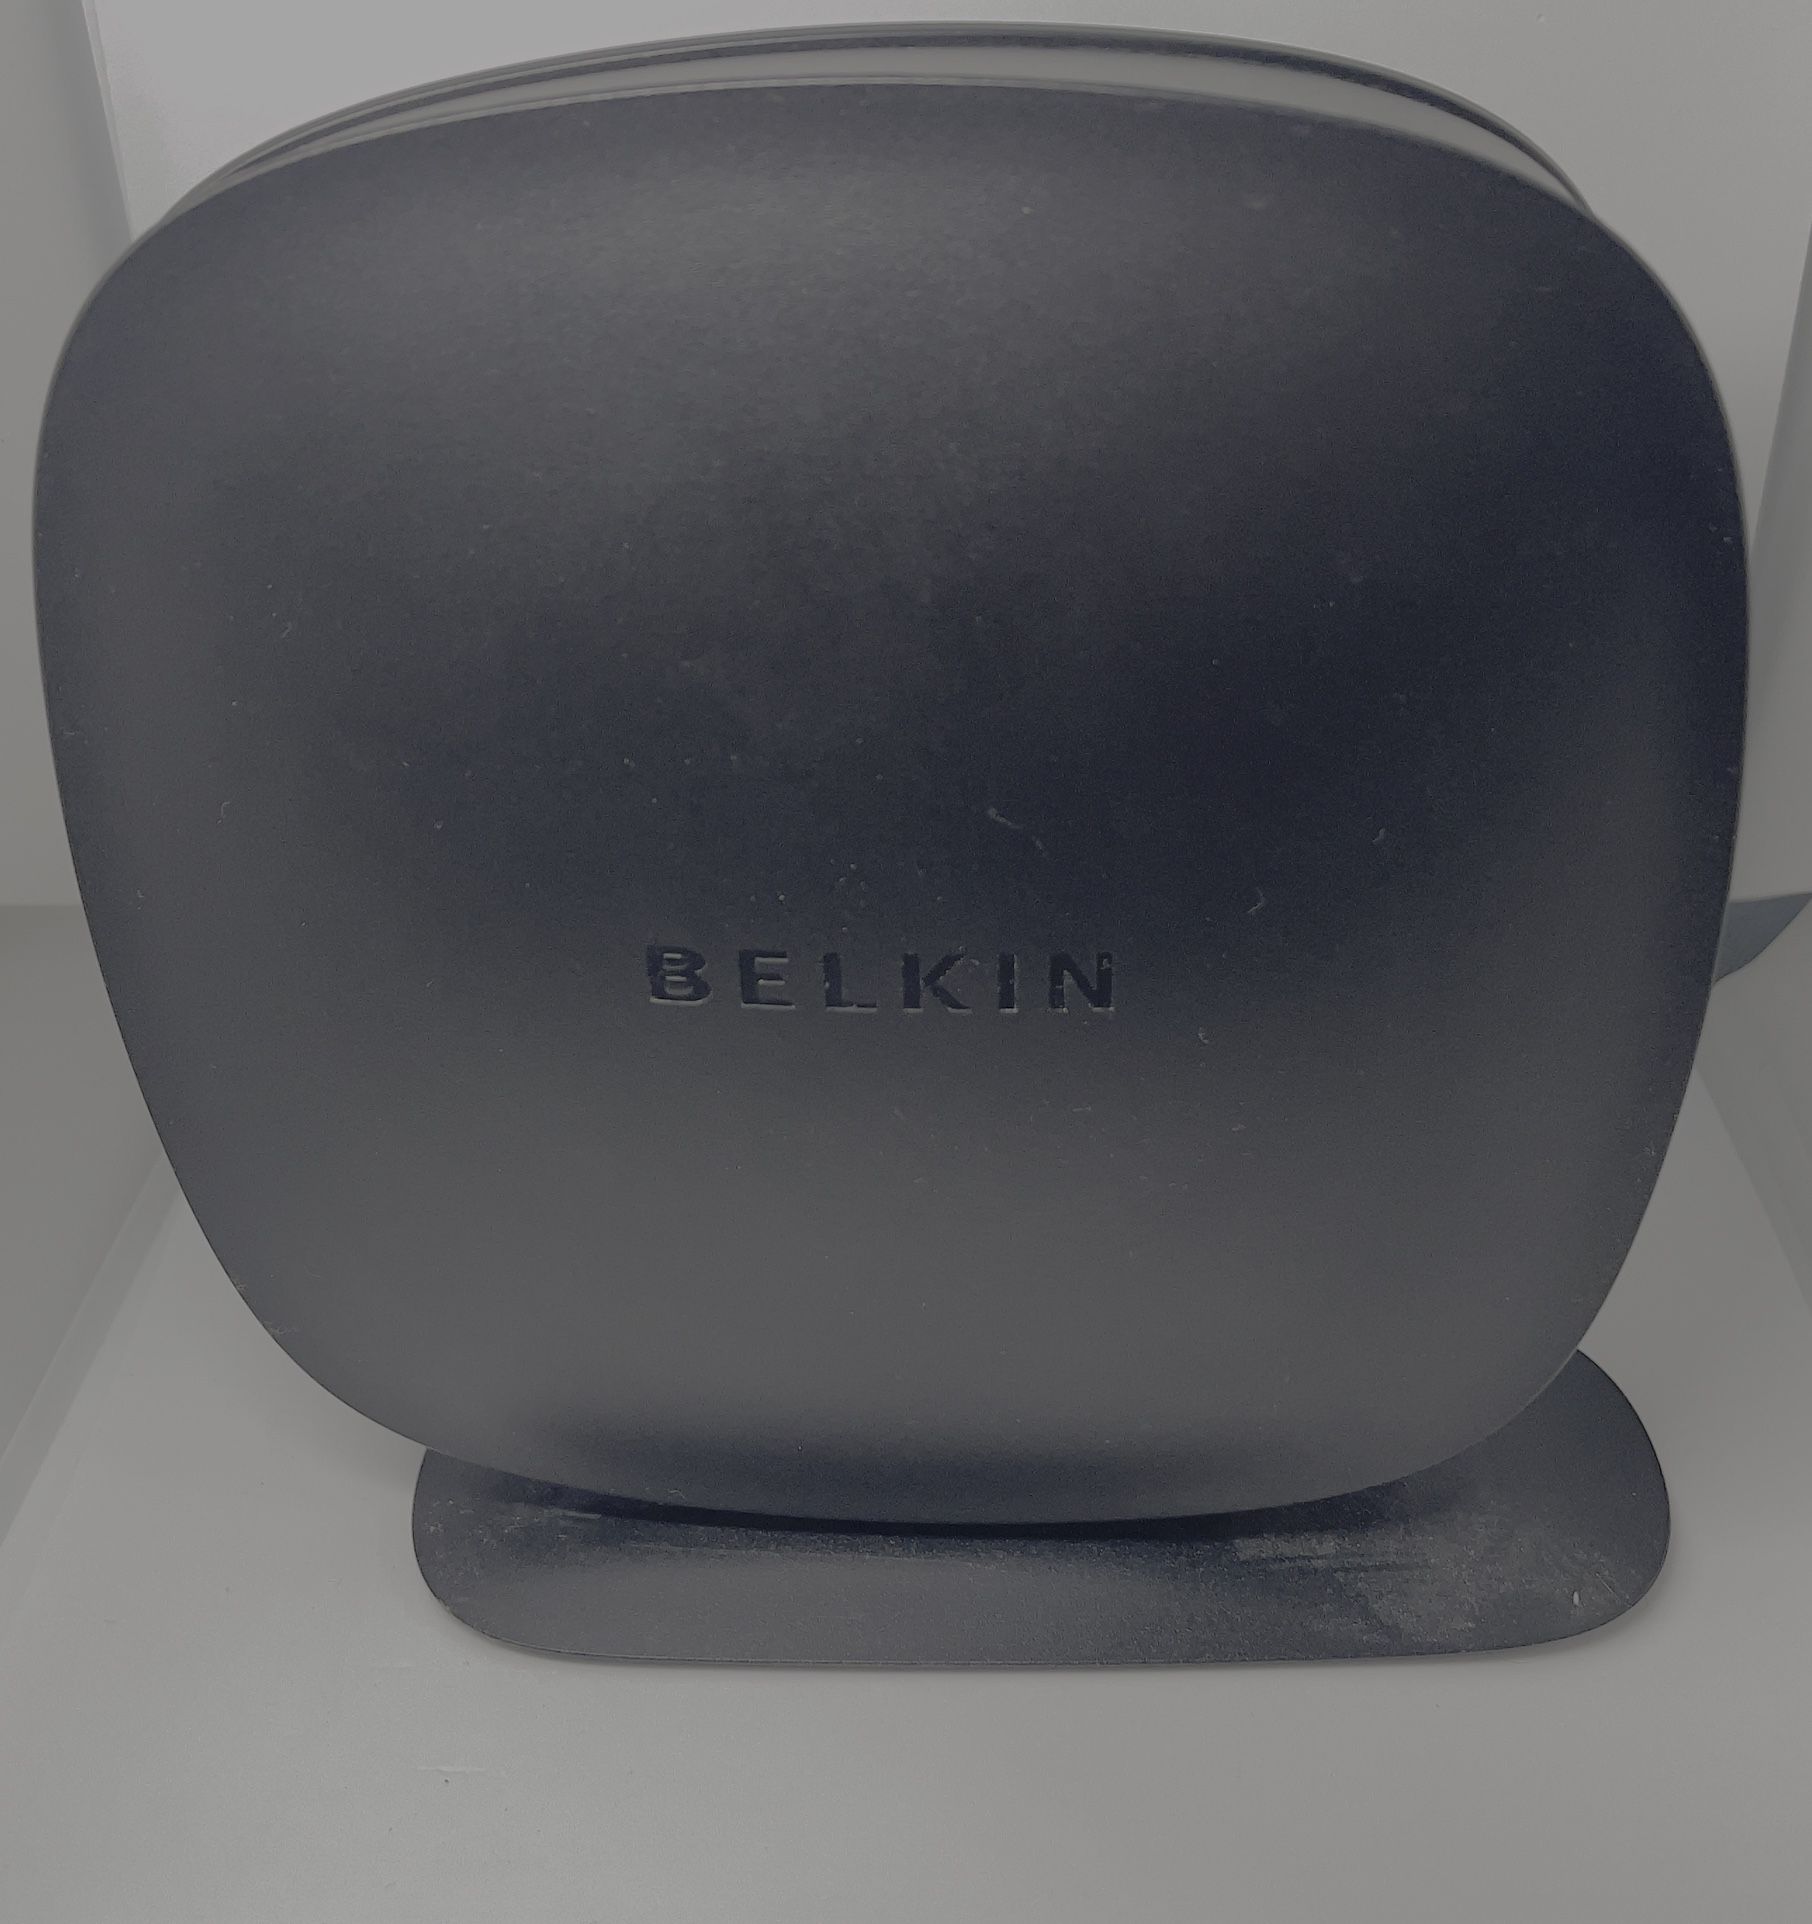 Belkin Wifi Router